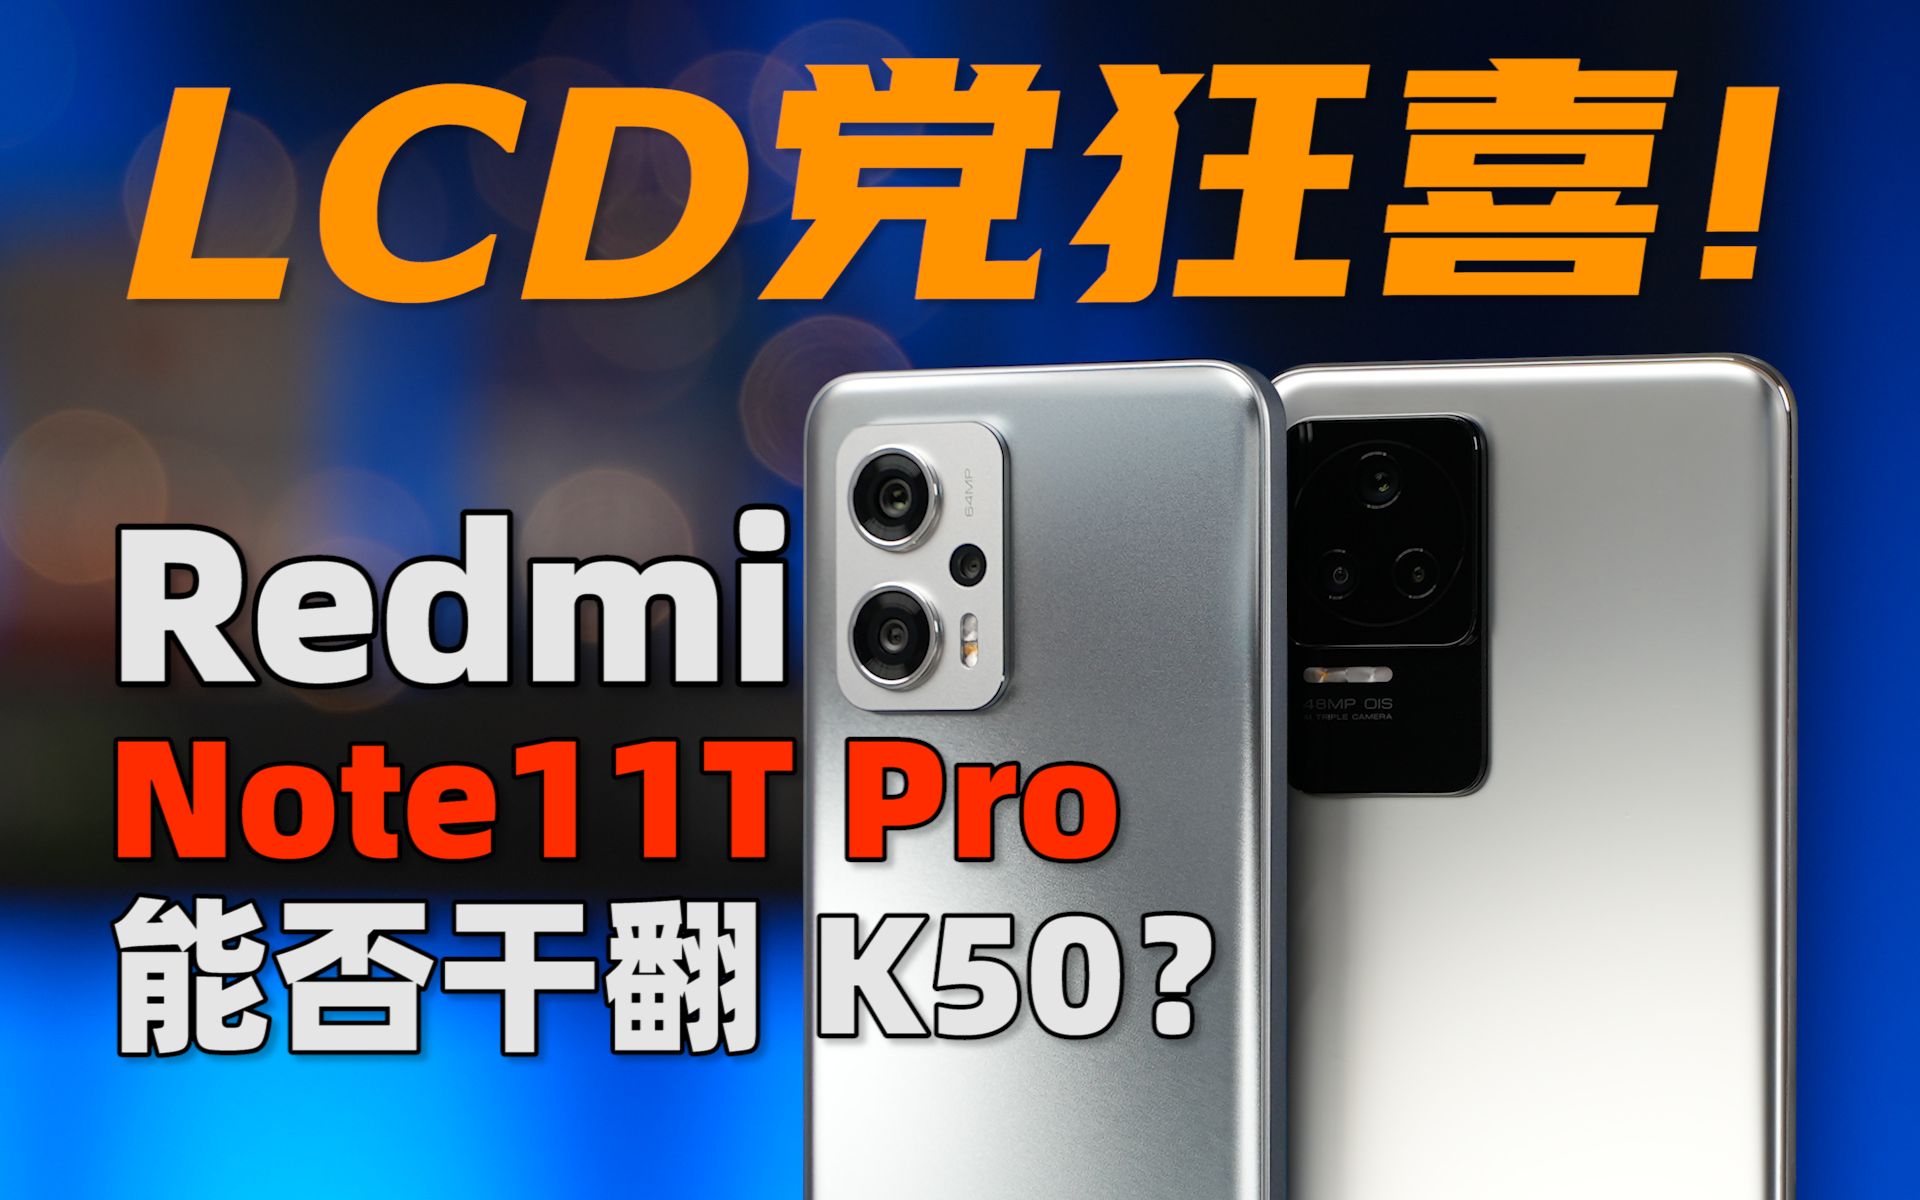 LCD党狂喜！红米Note11T Pro 能否干翻 K50 | 大米评测